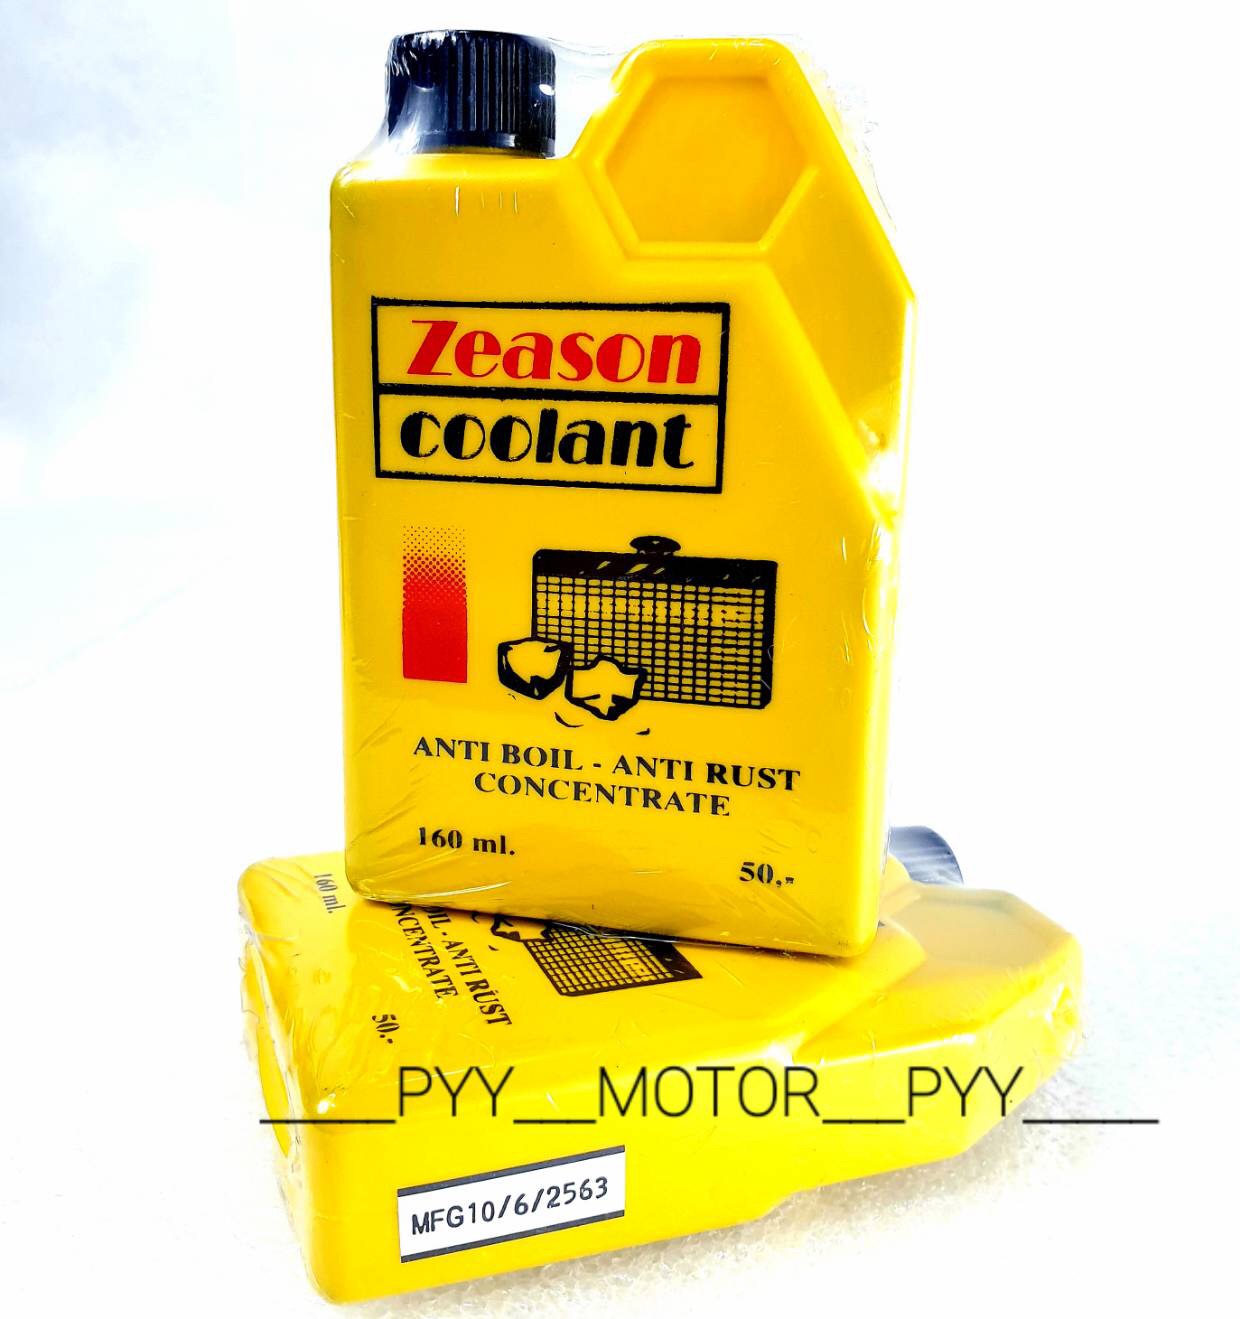 Zeason coolant น้ำยาปรับความเย็น , น้ำยาหม้อน้ำ , น้ำยาหล่อเย็น 160 ml. (1ขวด)